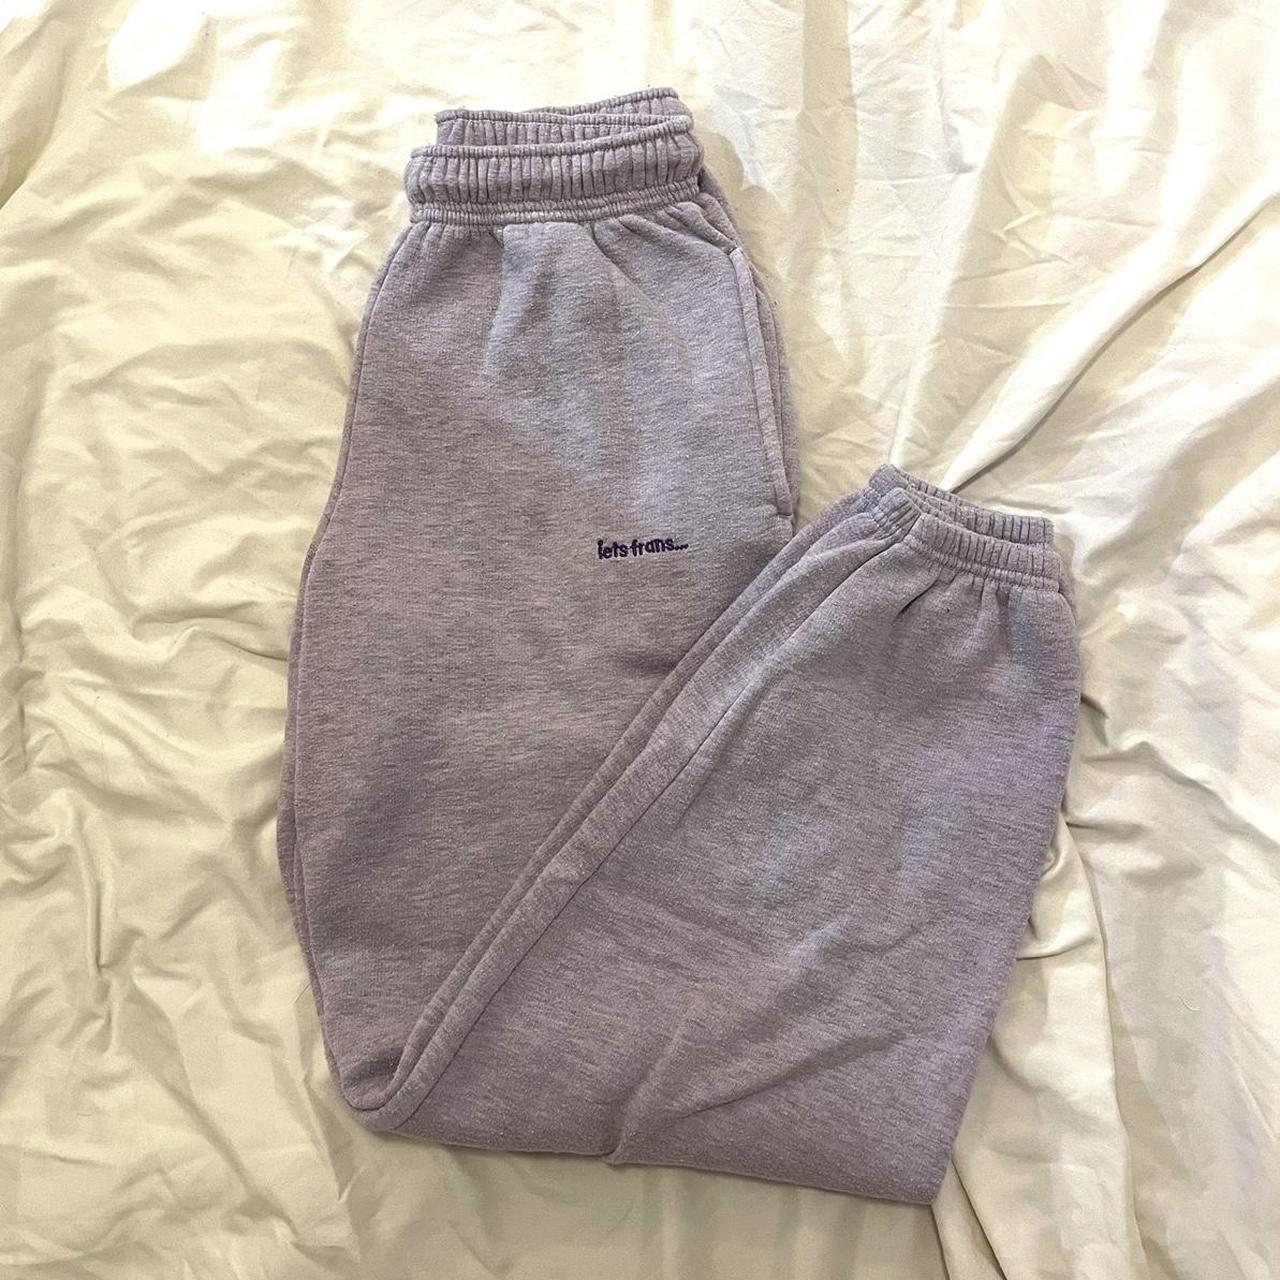 Iets Fran’s Sweatpants (Purple) - worn in good... - Depop